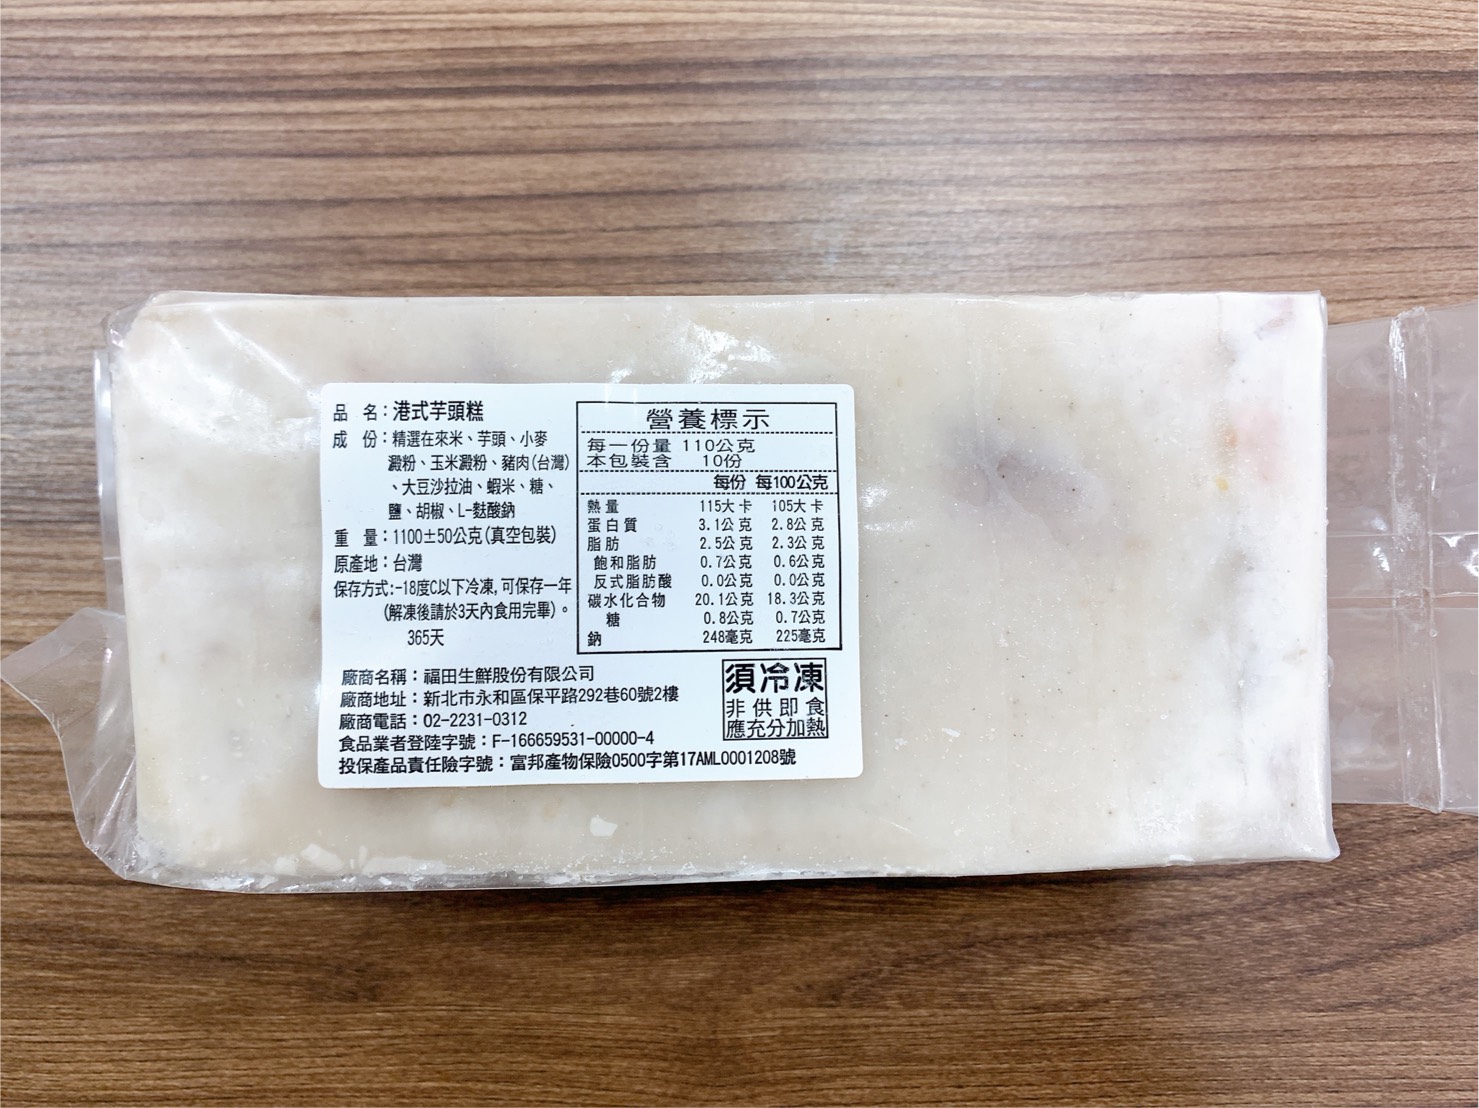       【陳記好味】港式蘿蔔糕、芋頭糕-3包30片